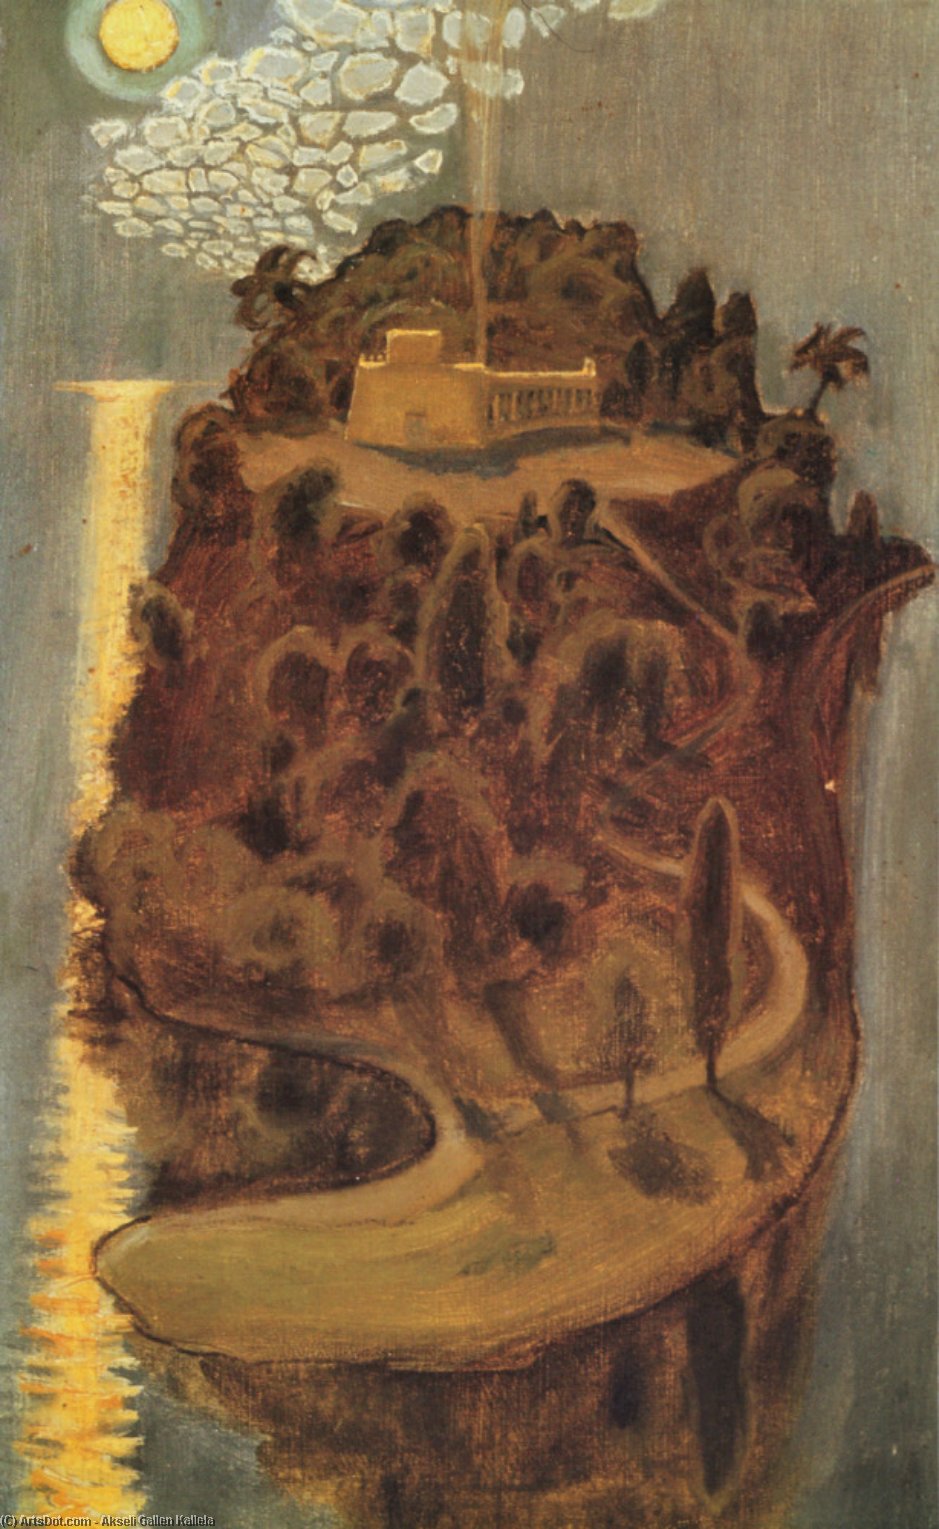 WikiOO.org - Encyclopedia of Fine Arts - Målning, konstverk Akseli Gallen Kallela - Island of dreams